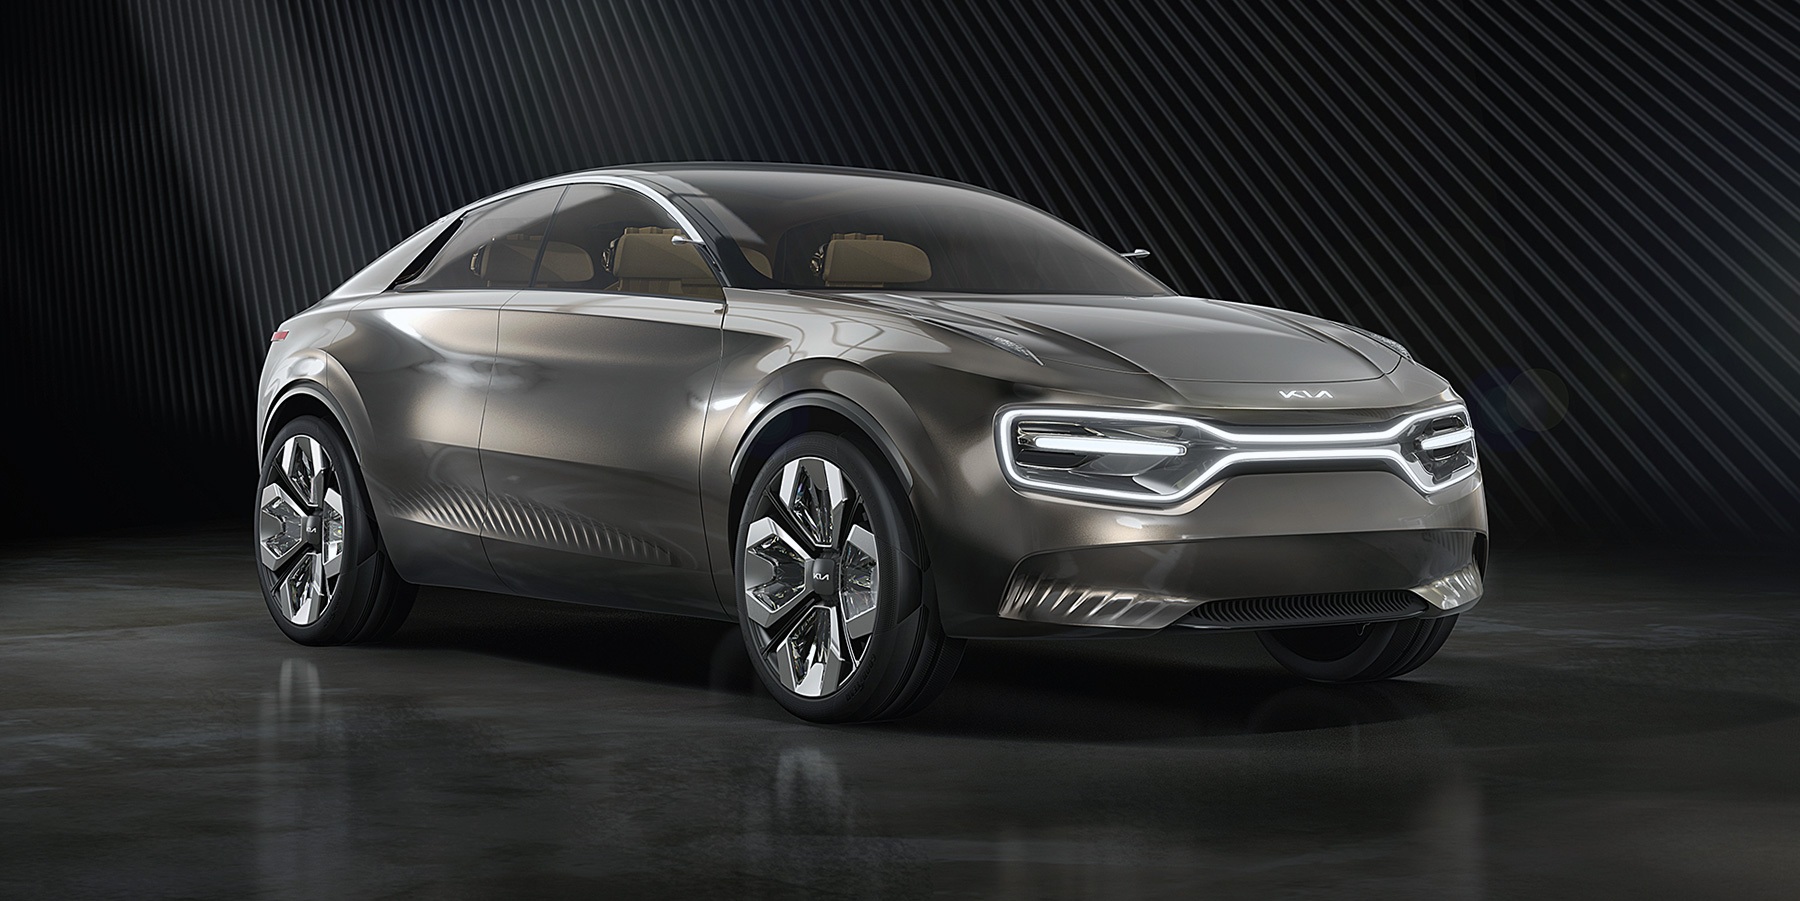 Le concept-car Imagine dévoilé au salon auto de Genève en 2019 servira de base au futur crossover électrique de Kia. © Kia